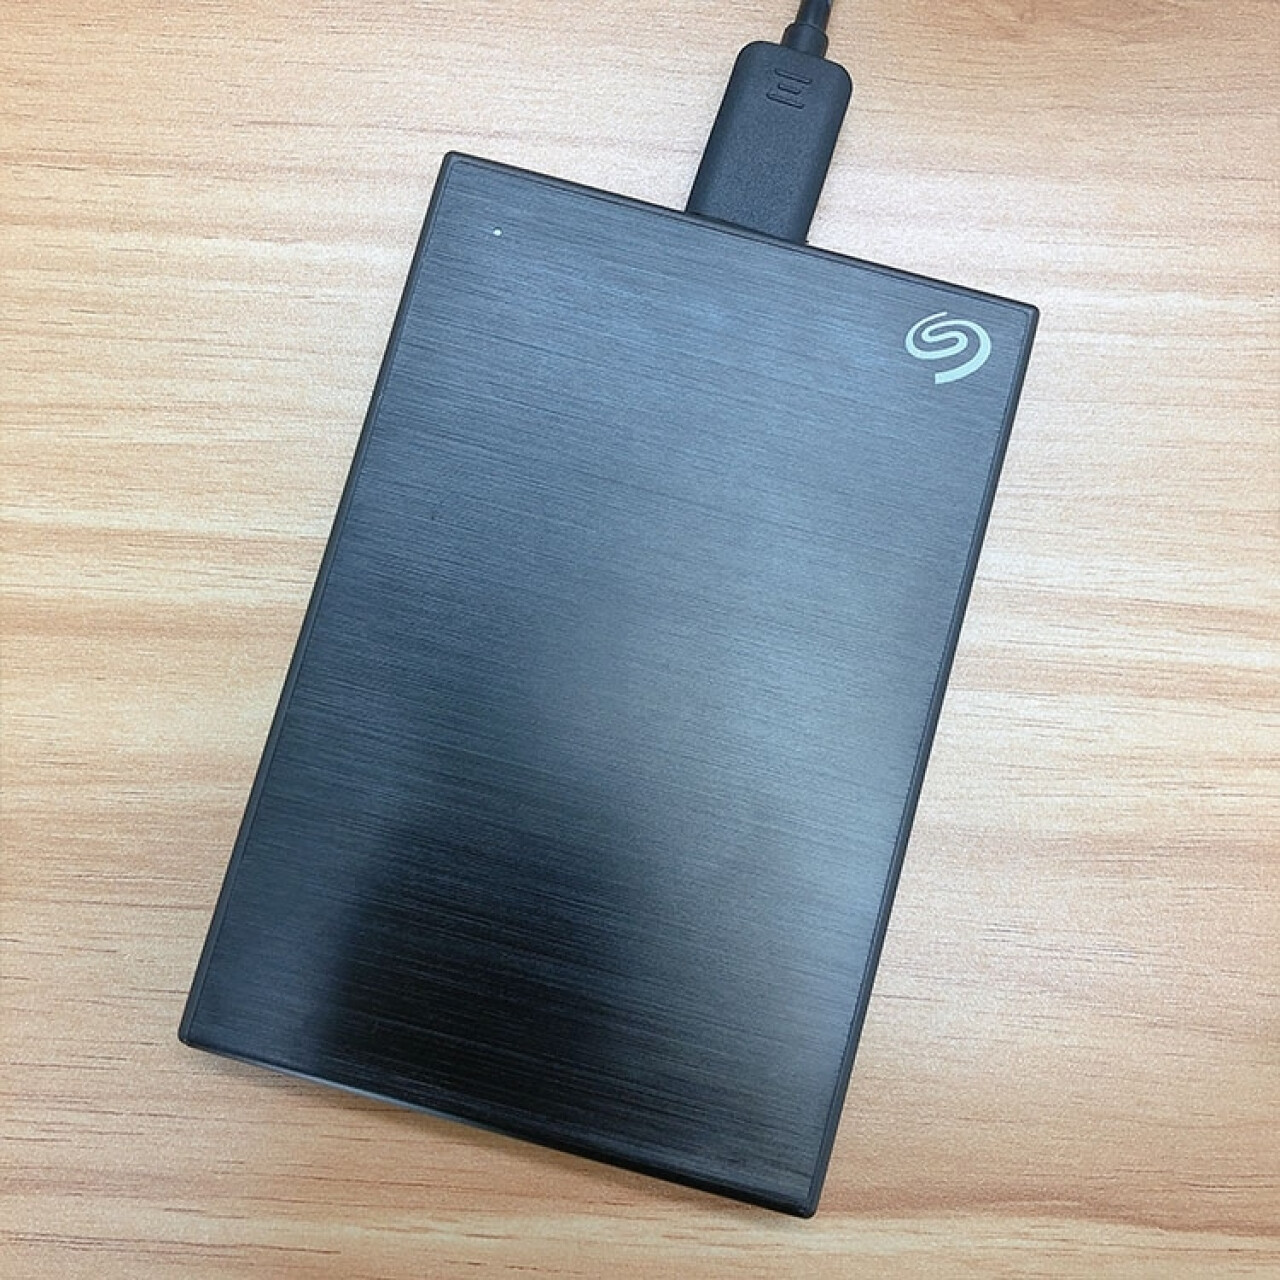 希捷(Seagate) 移动硬盘2TB 加密 USB3.0 希捷铭 2.5英寸 金属外观兼容Mac 黑 原厂数据恢复服务(希捷官网中国),第5张